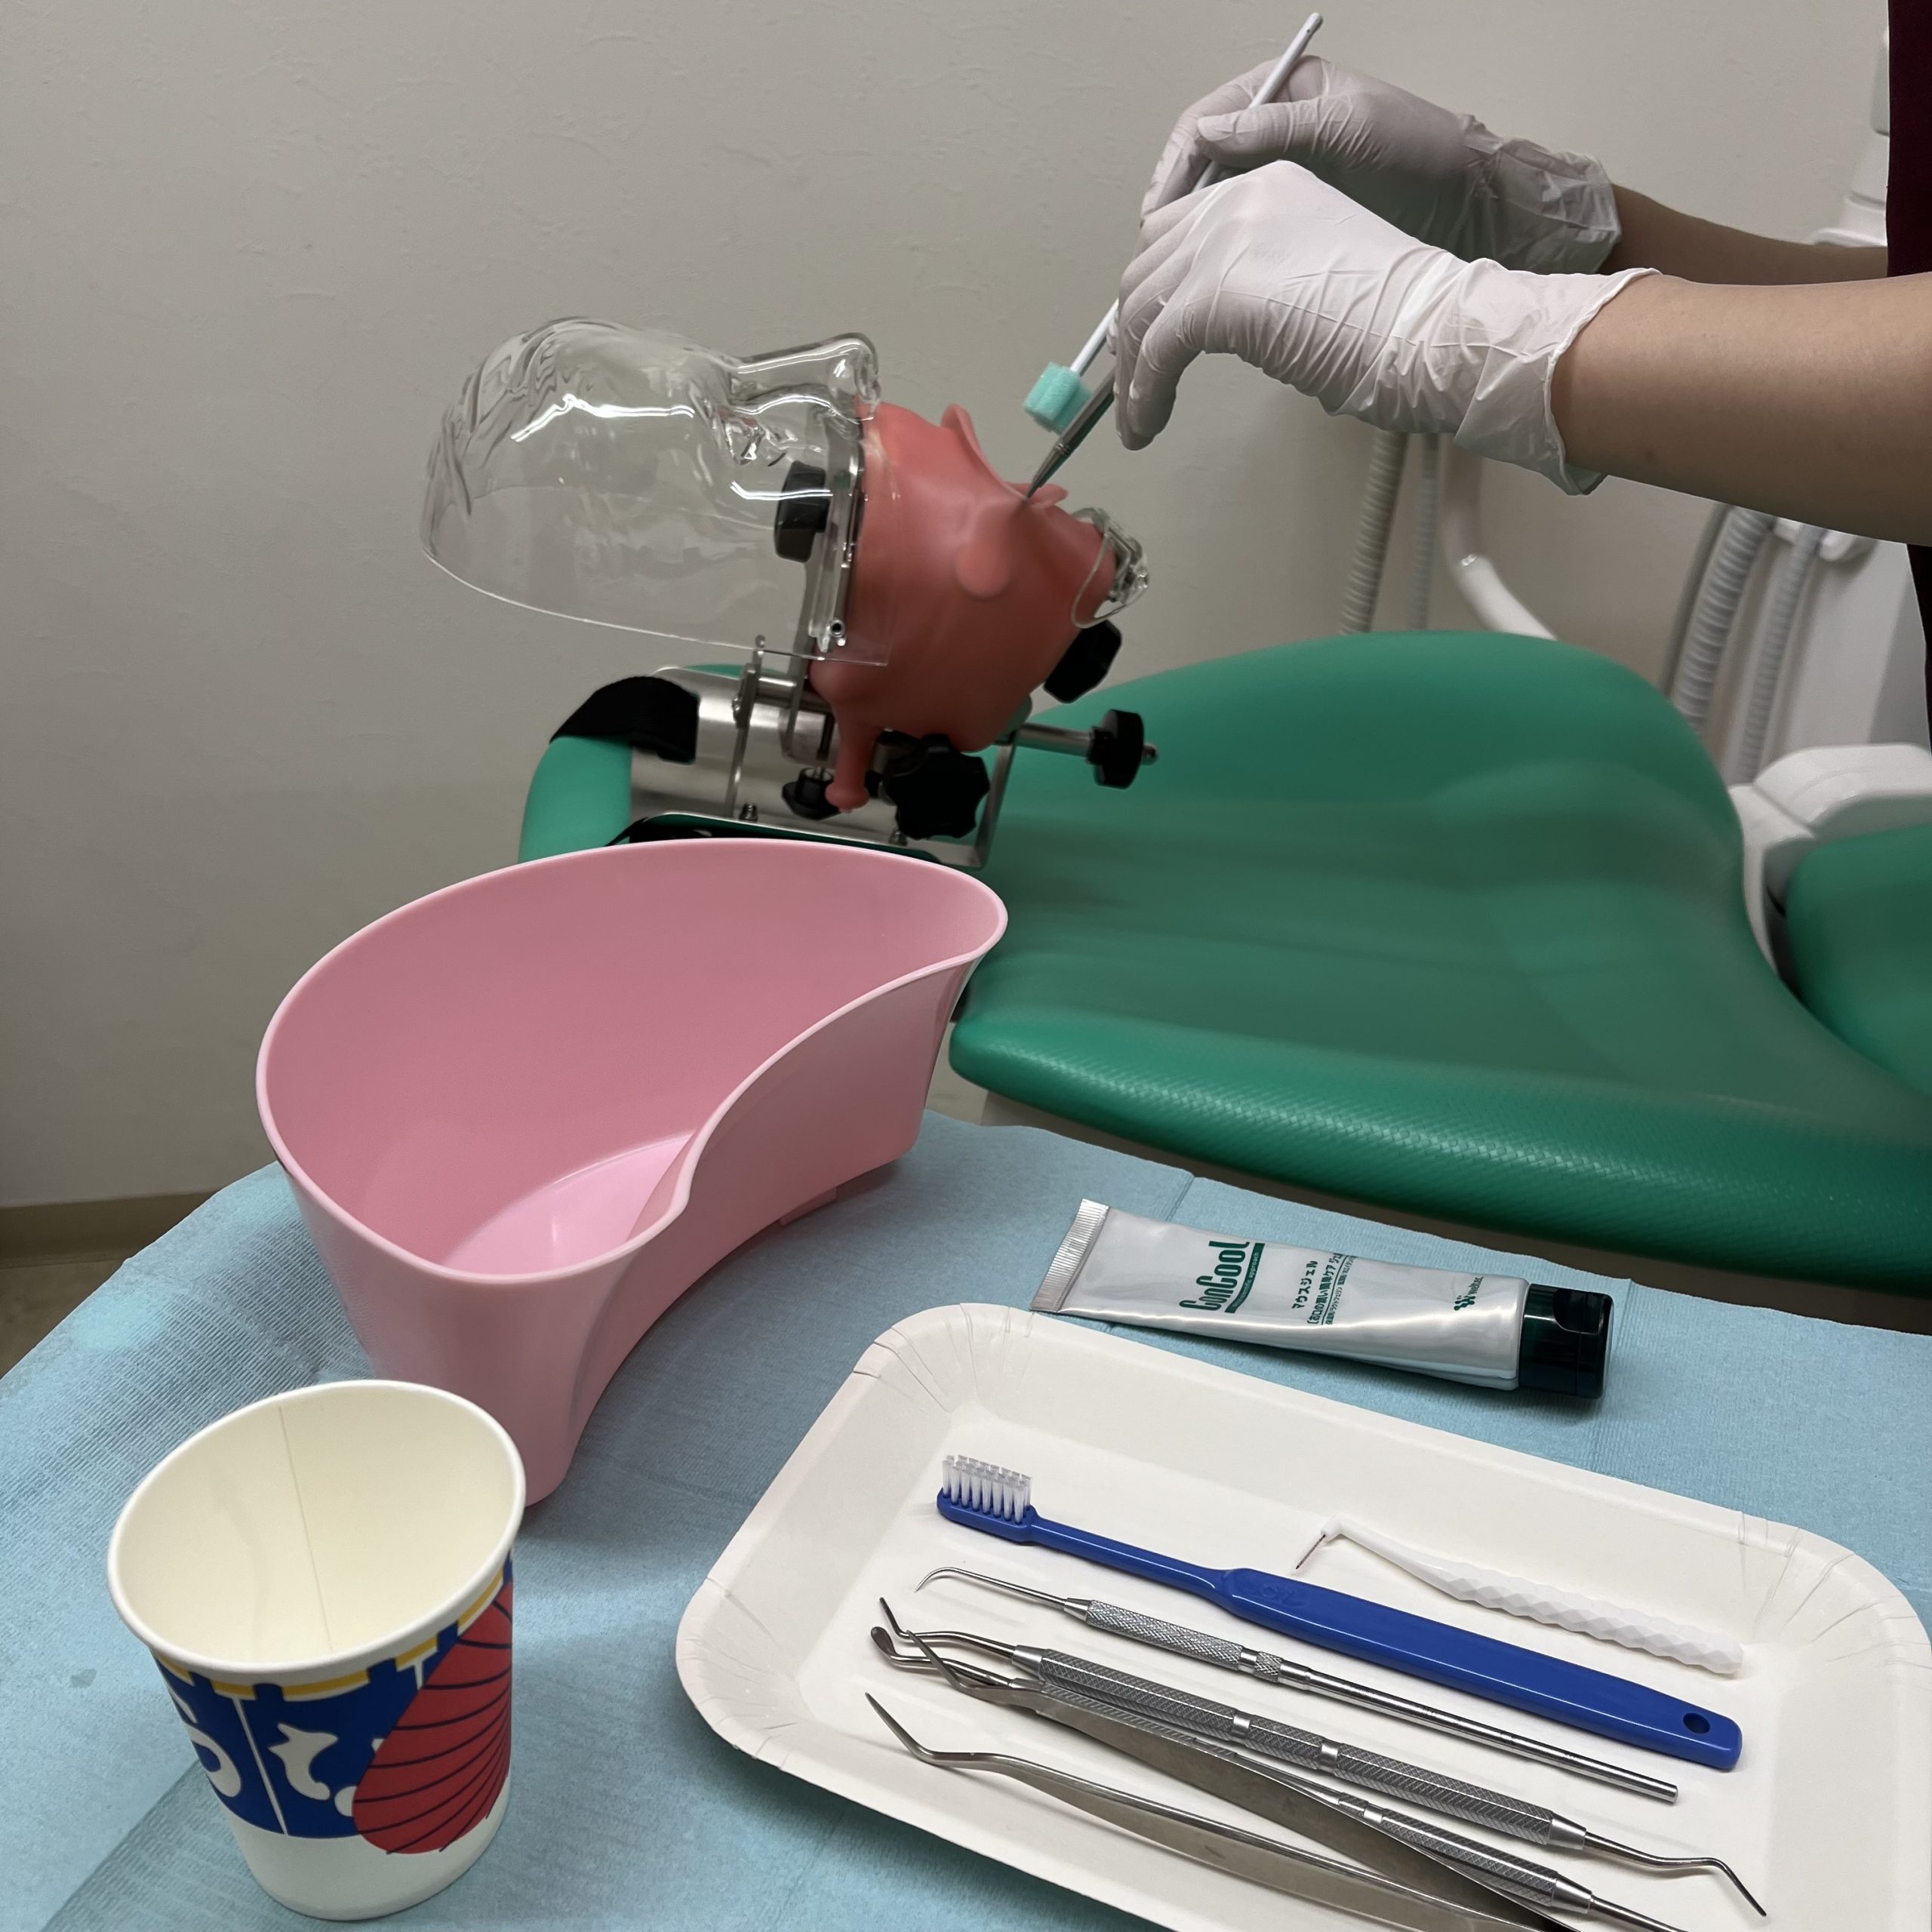 歯列の模型とファントムをつかって歯科訪問診療に関する院内研修を行いました